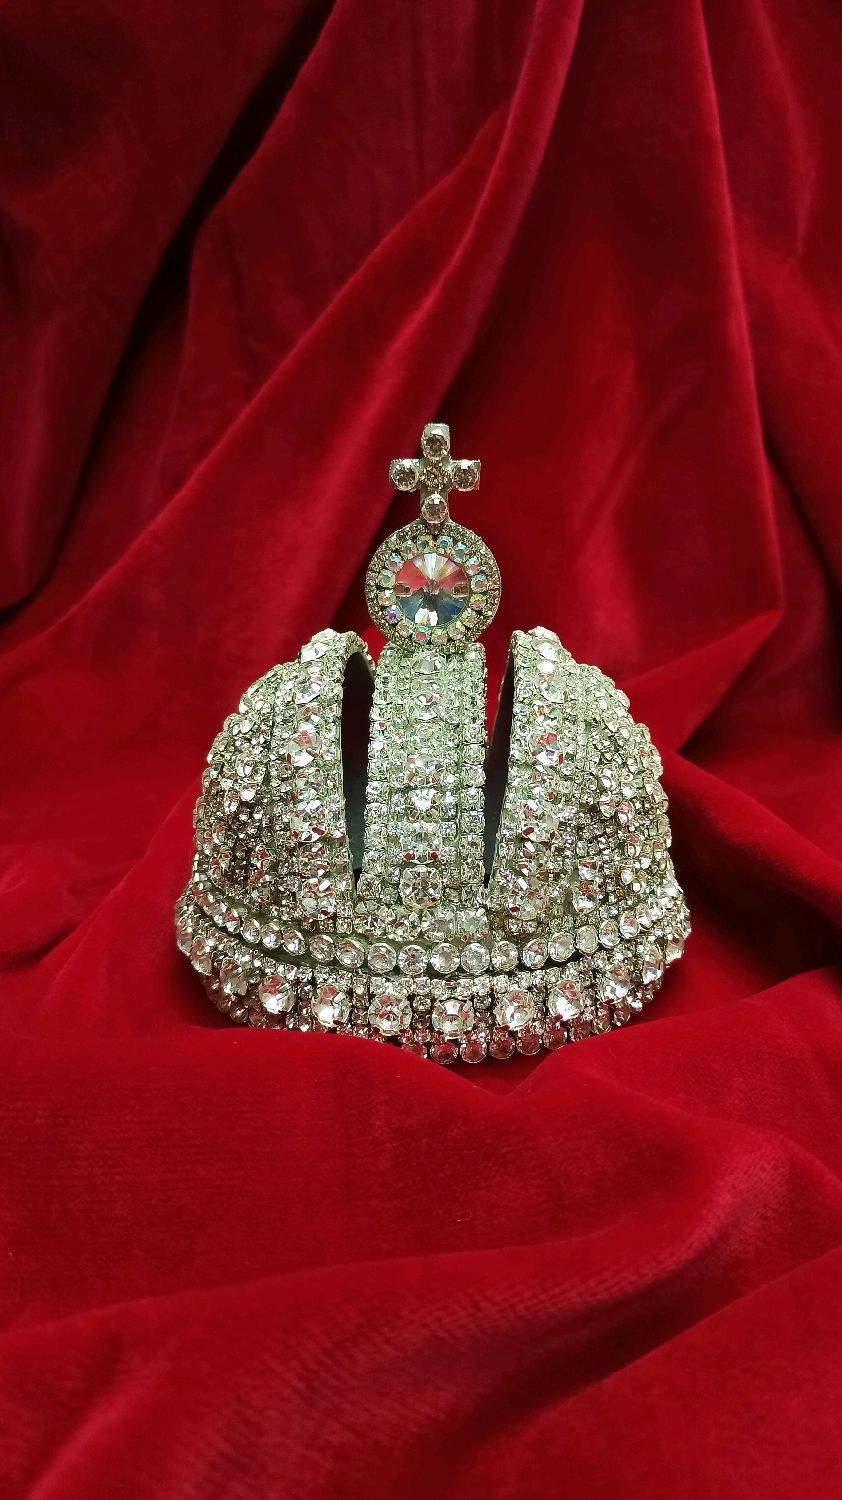 Цветок императорская корона фото